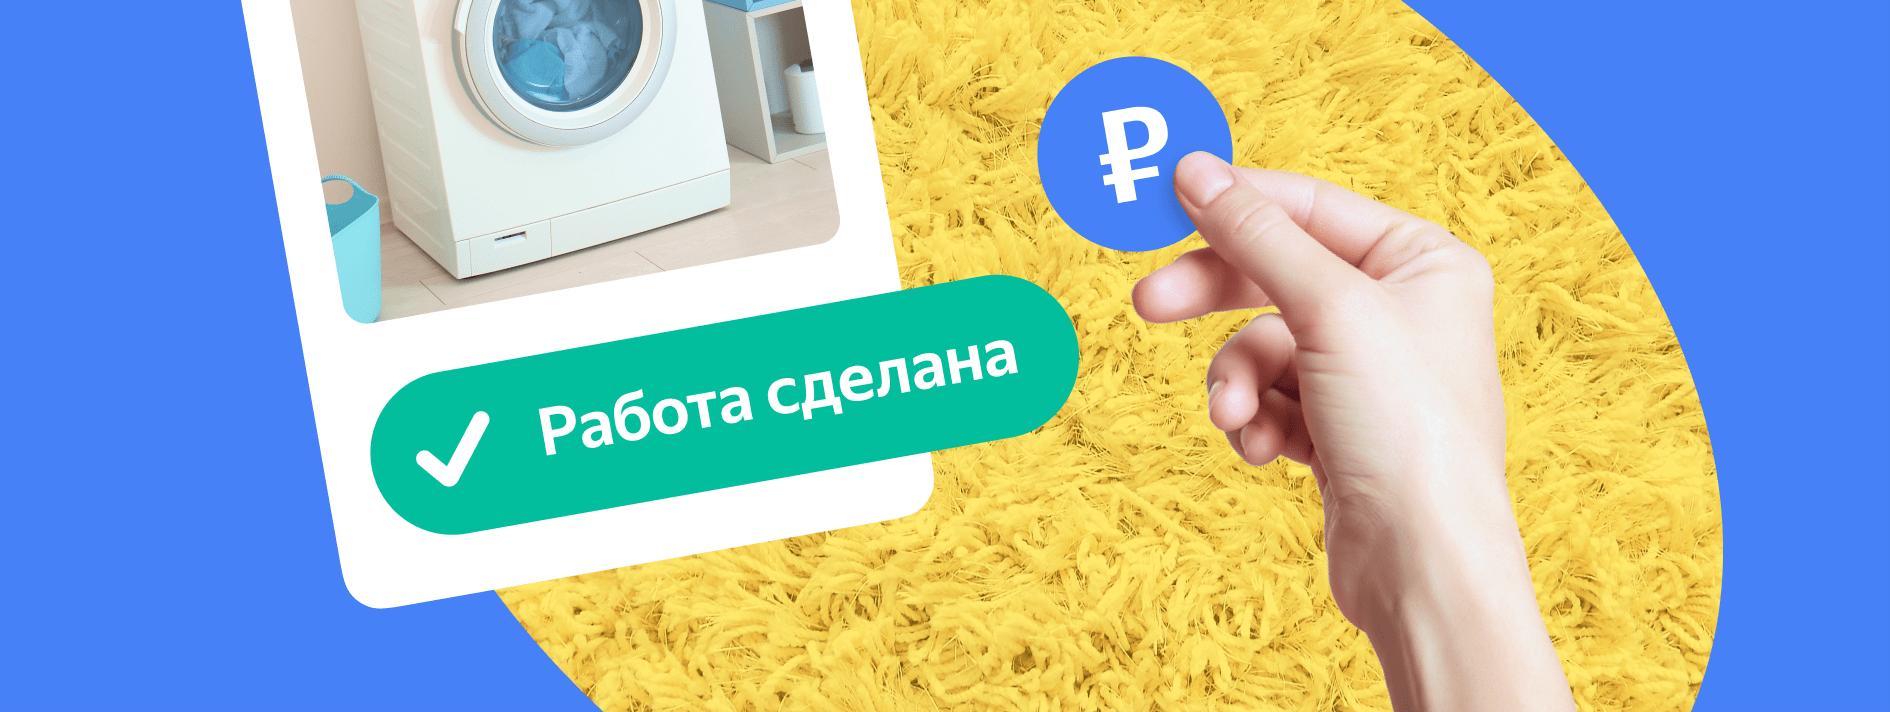 Хотите быть уверенными, что получите оплату? Заключите безопасную сделку —  Блог Яндекс.Услуг